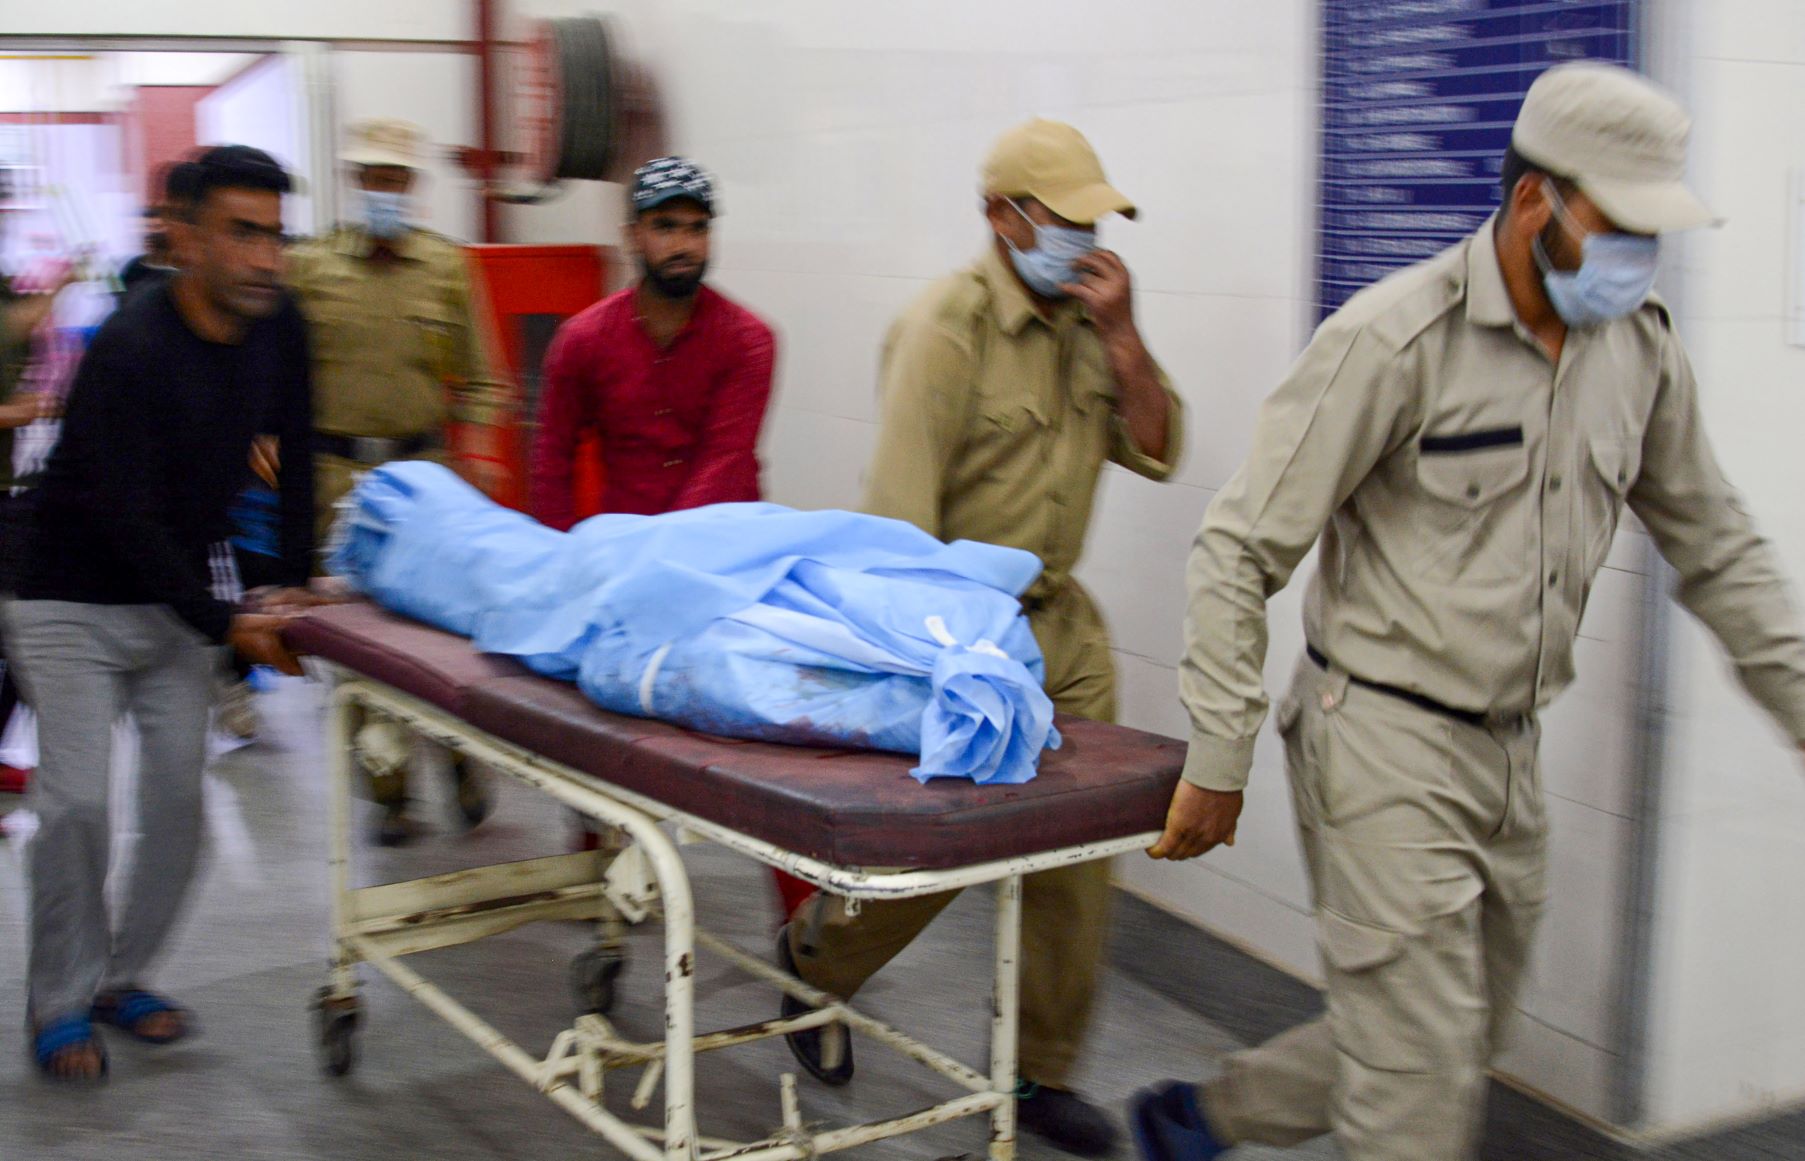 जम्मू कश्मीर: बैंक कर्मी के बाद आतंकियों ने दो प्रवासी मज़दूरों को गोली मारी, एक की मौत